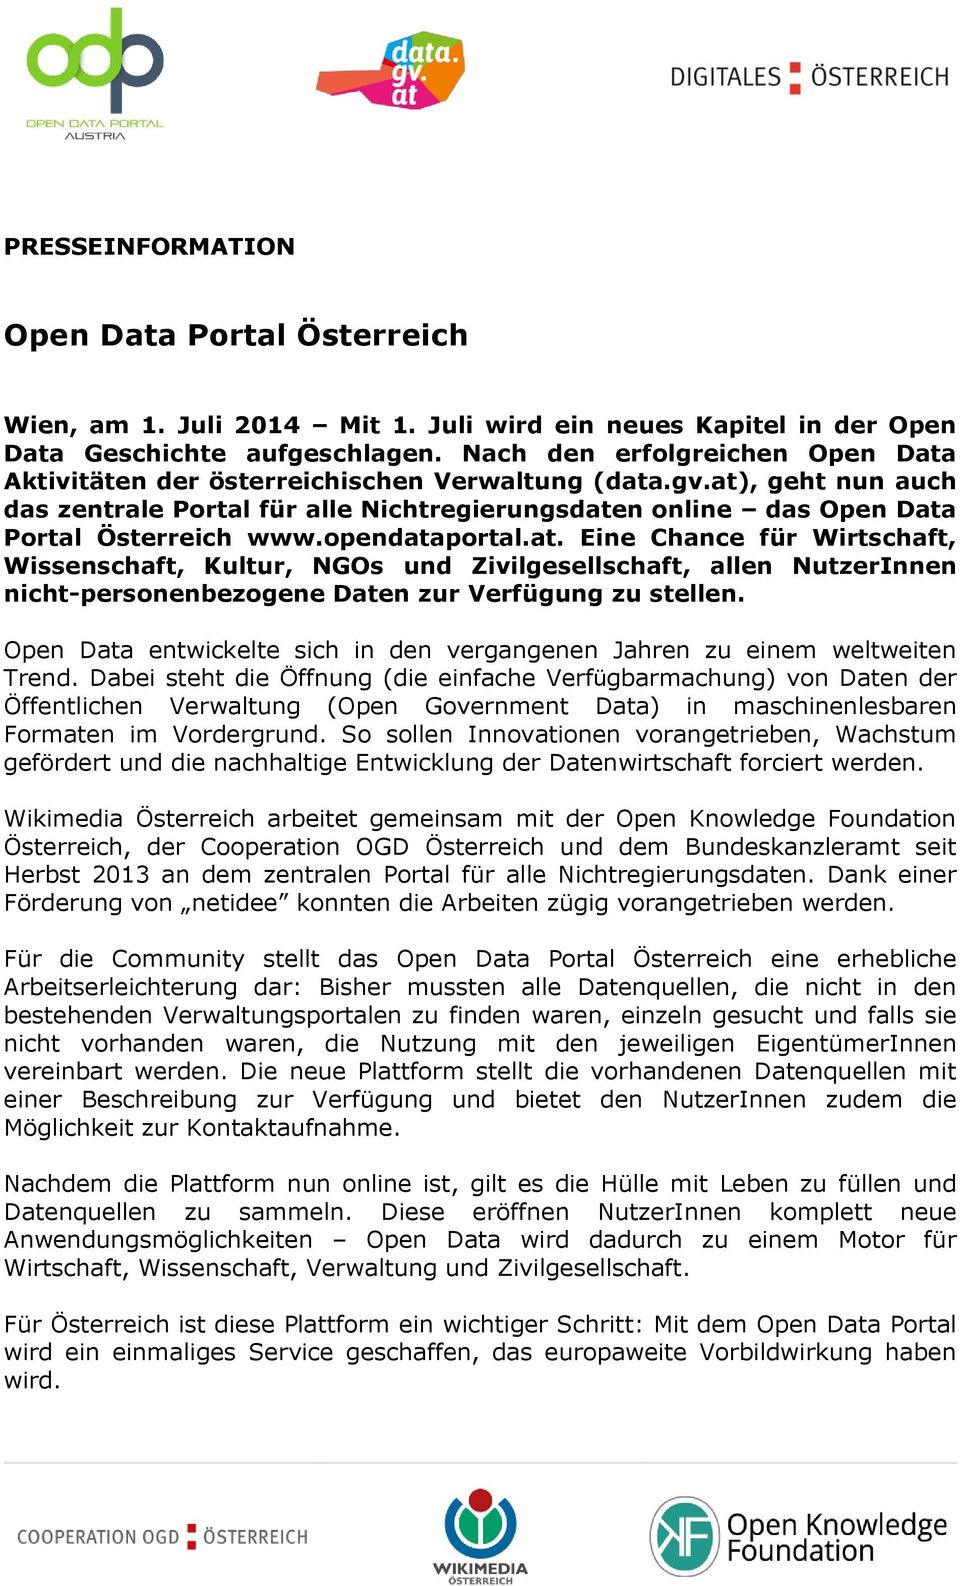 opendataportal.at. Eine Chance für Wirtschaft, Wissenschaft, Kultur, NGOs und Zivilgesellschaft, allen NutzerInnen nicht-personenbezogene Daten zur Verfügung zu stellen.